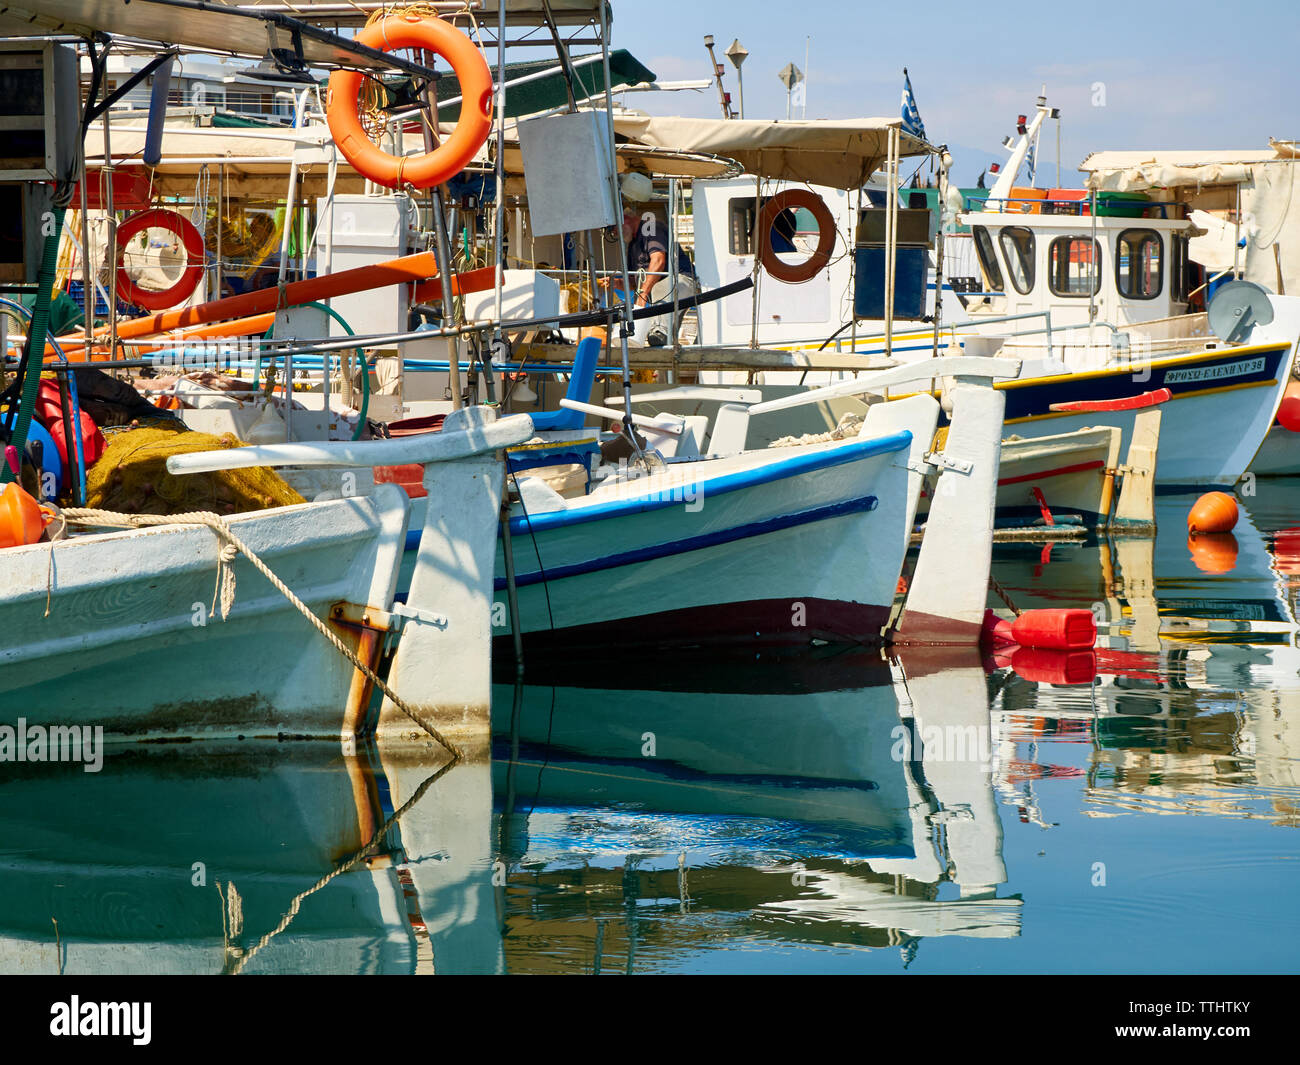 Le Port/Port de plaisance de Rethymno (Rethymnon), Crète, îles grecques, Grèce, Europe Banque D'Images